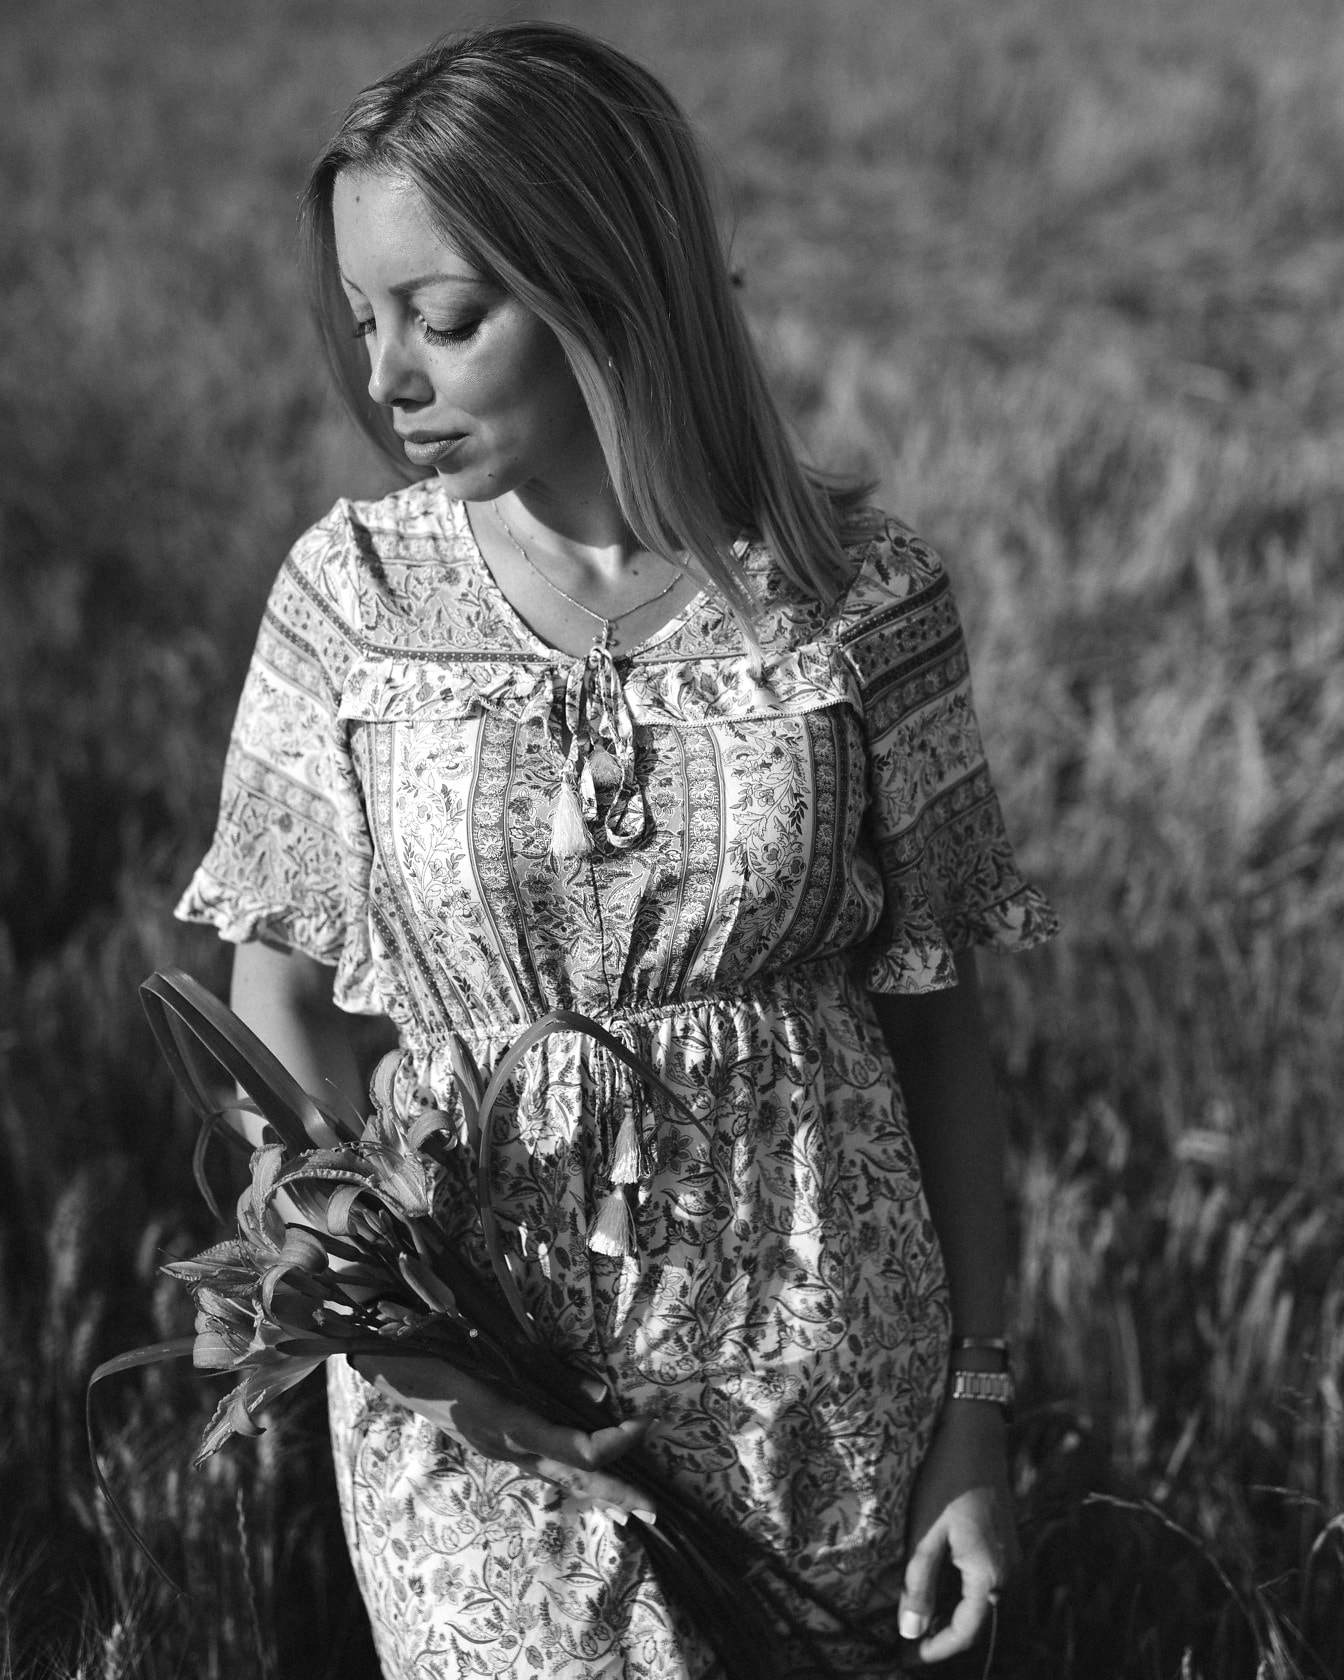 Monokromt porträtt av den underbara kvinnan i vetefält som bär klänning